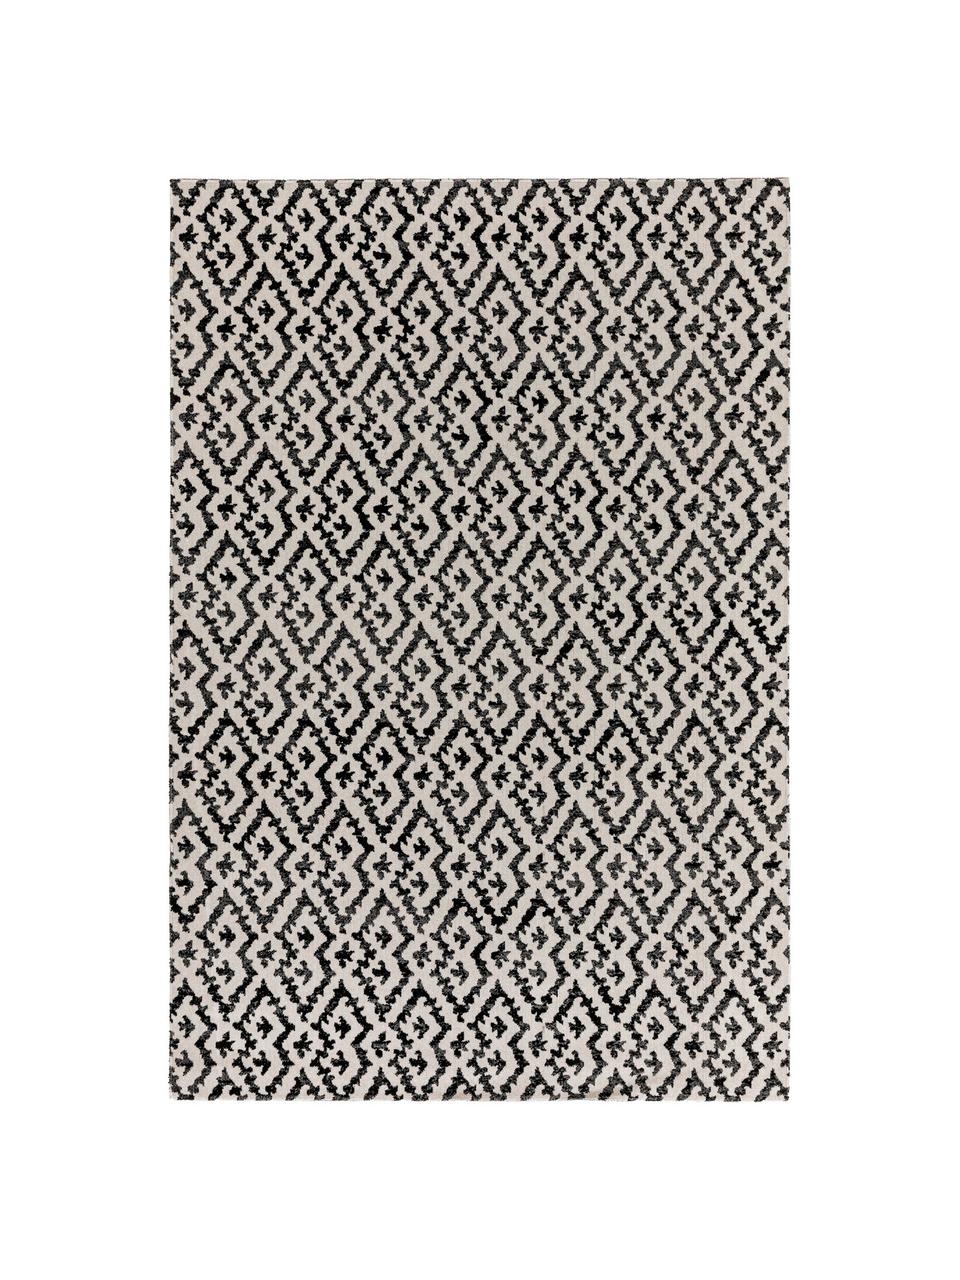 In- & Outdoor-Teppich Jerry im Ethno Look, 100% Polypropylen, Schwarz, Weiß, B 160 x L 230 cm (Größe M)